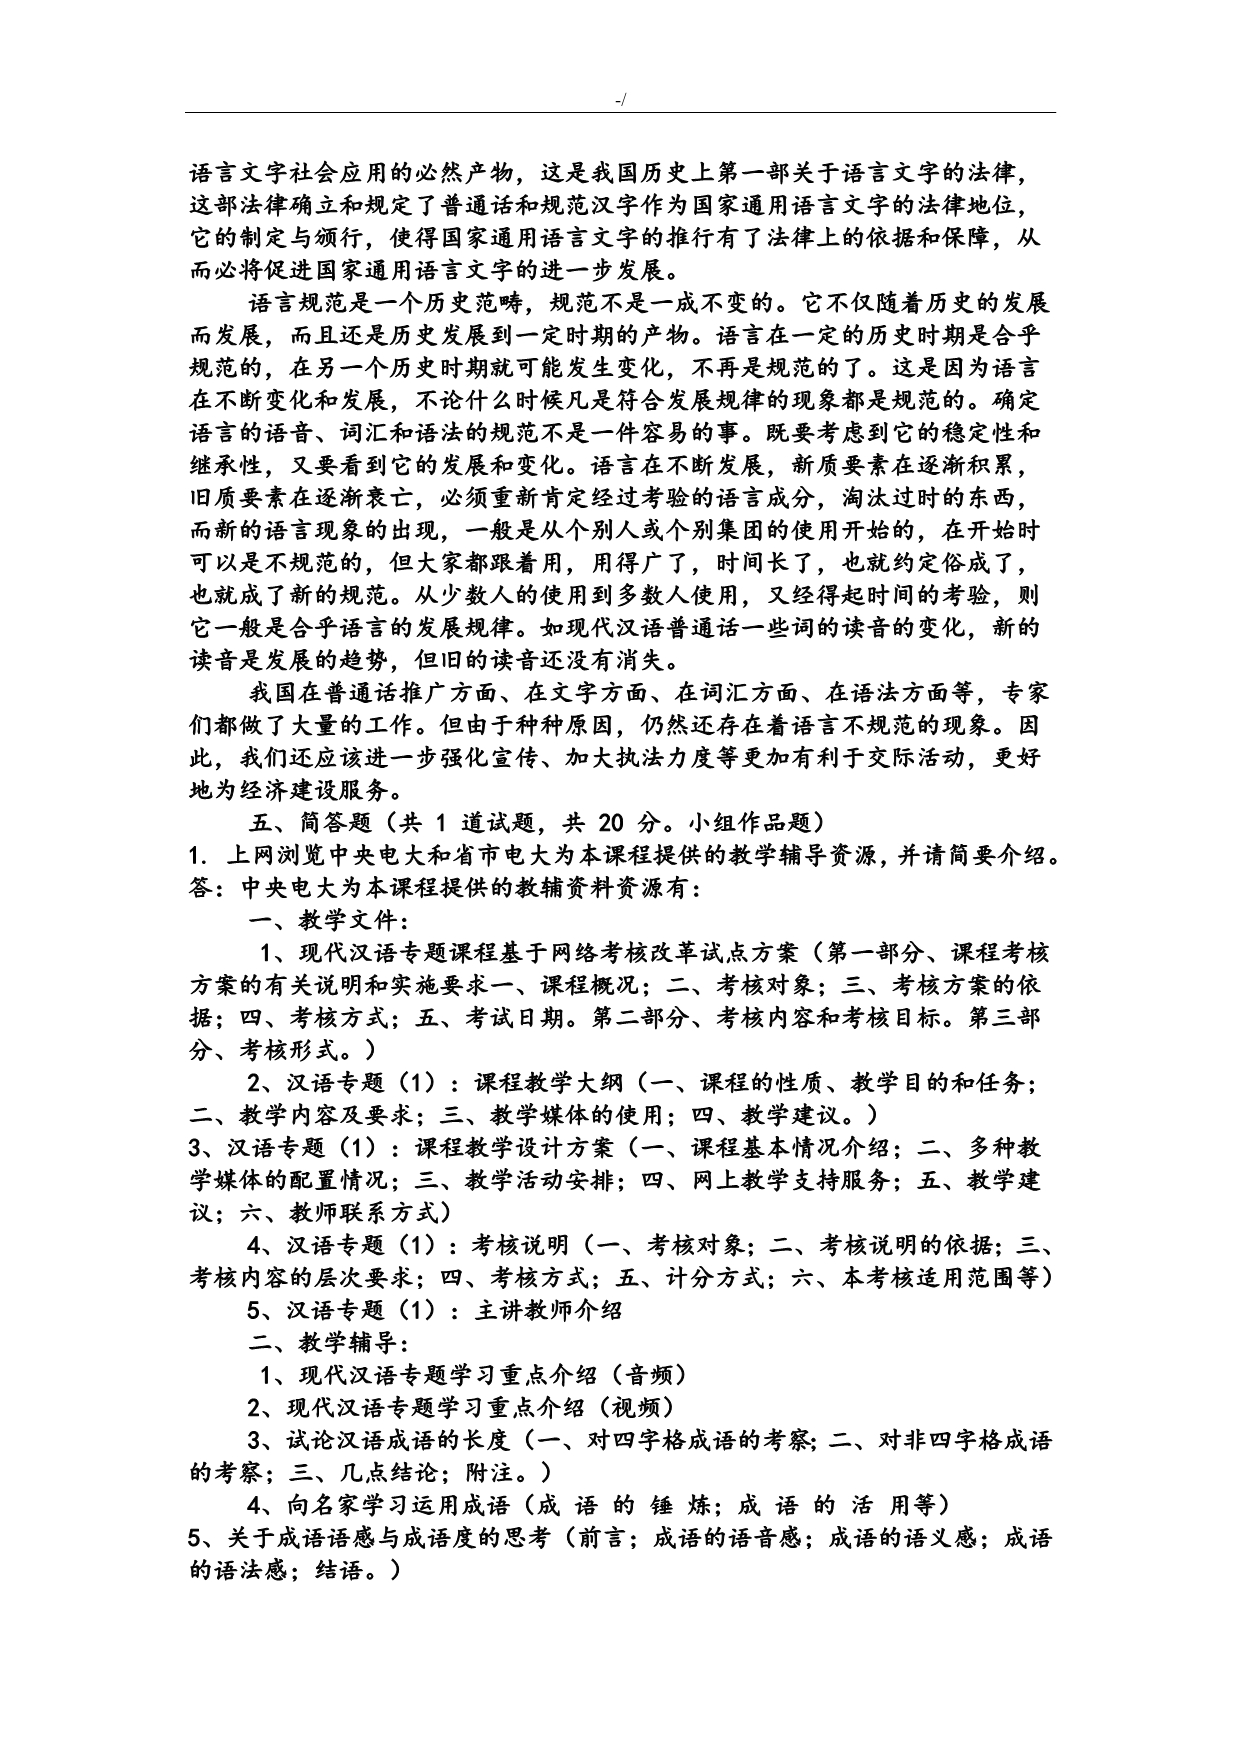 现代汉语主题材料网络作业答案解析(1-4任务)_第5页